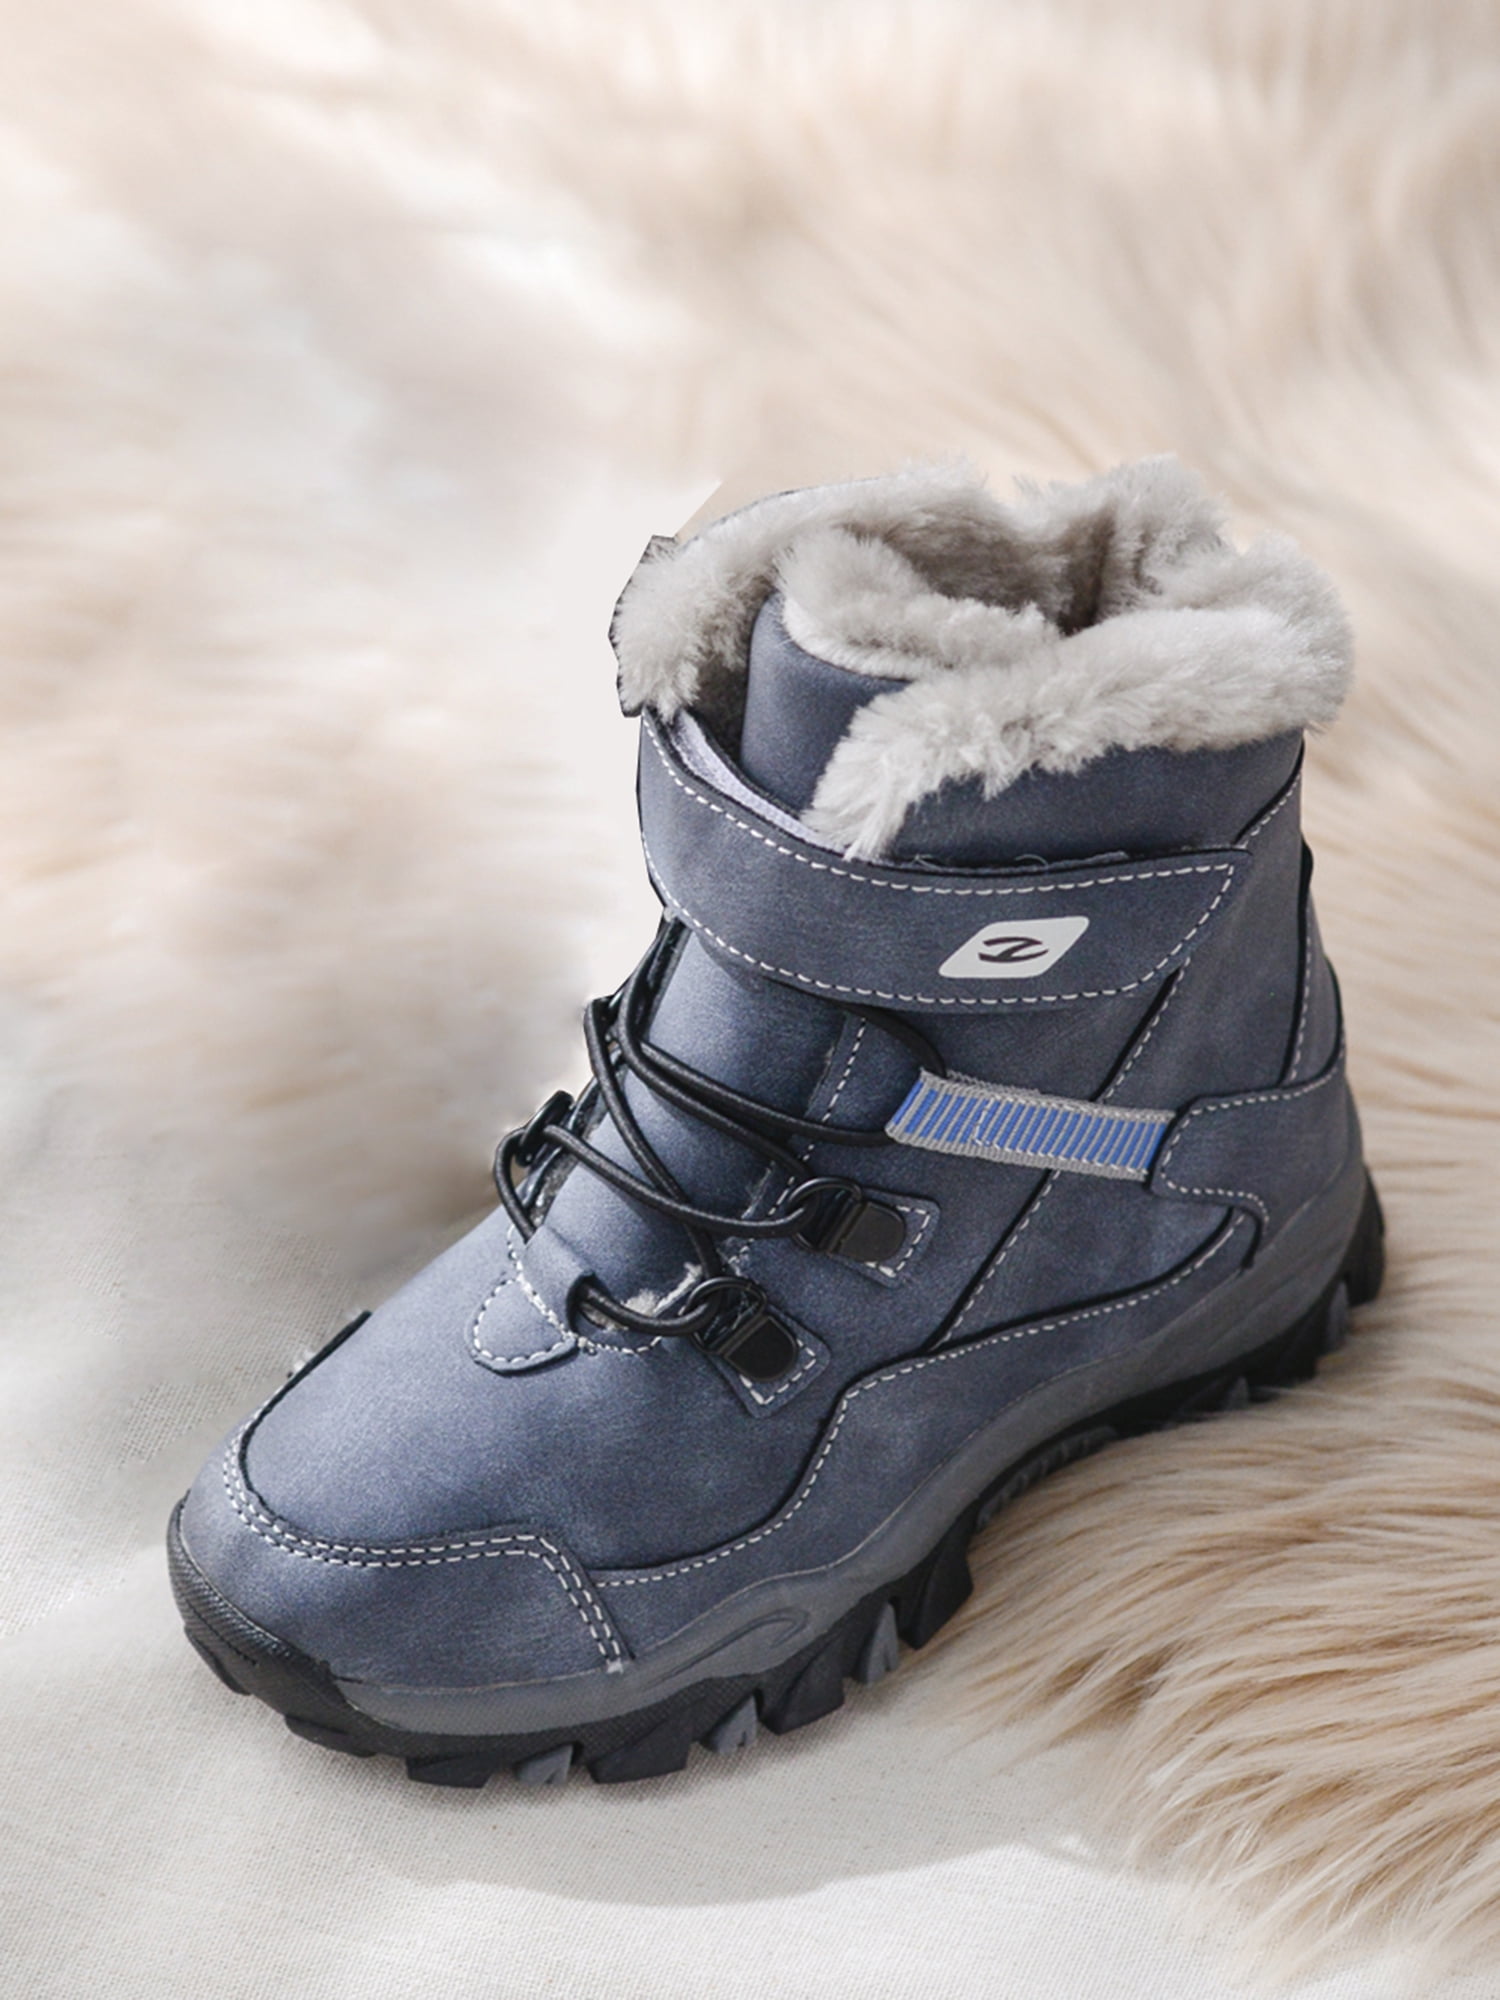 Boys Snow Boots Kids Winter Sneaker Big Little Kids Warm Shoes Anti Slip